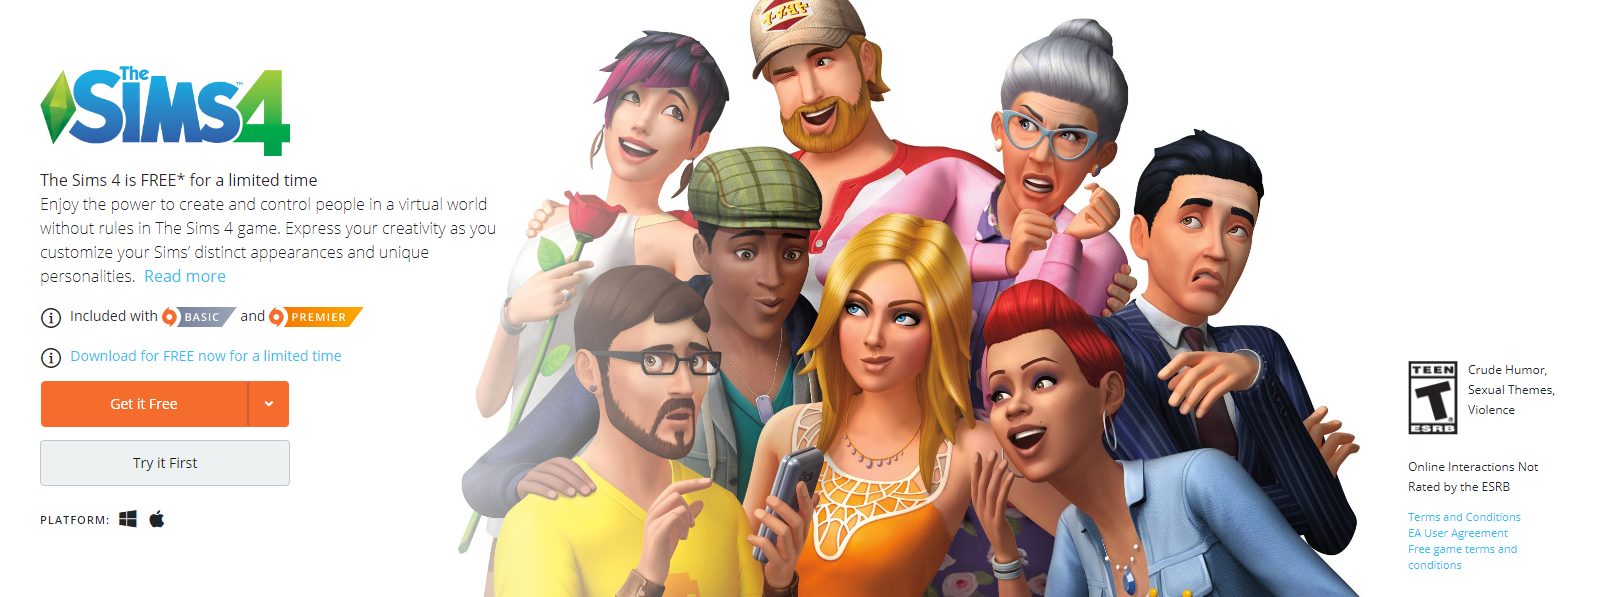 Sims 4 base game free download 2021